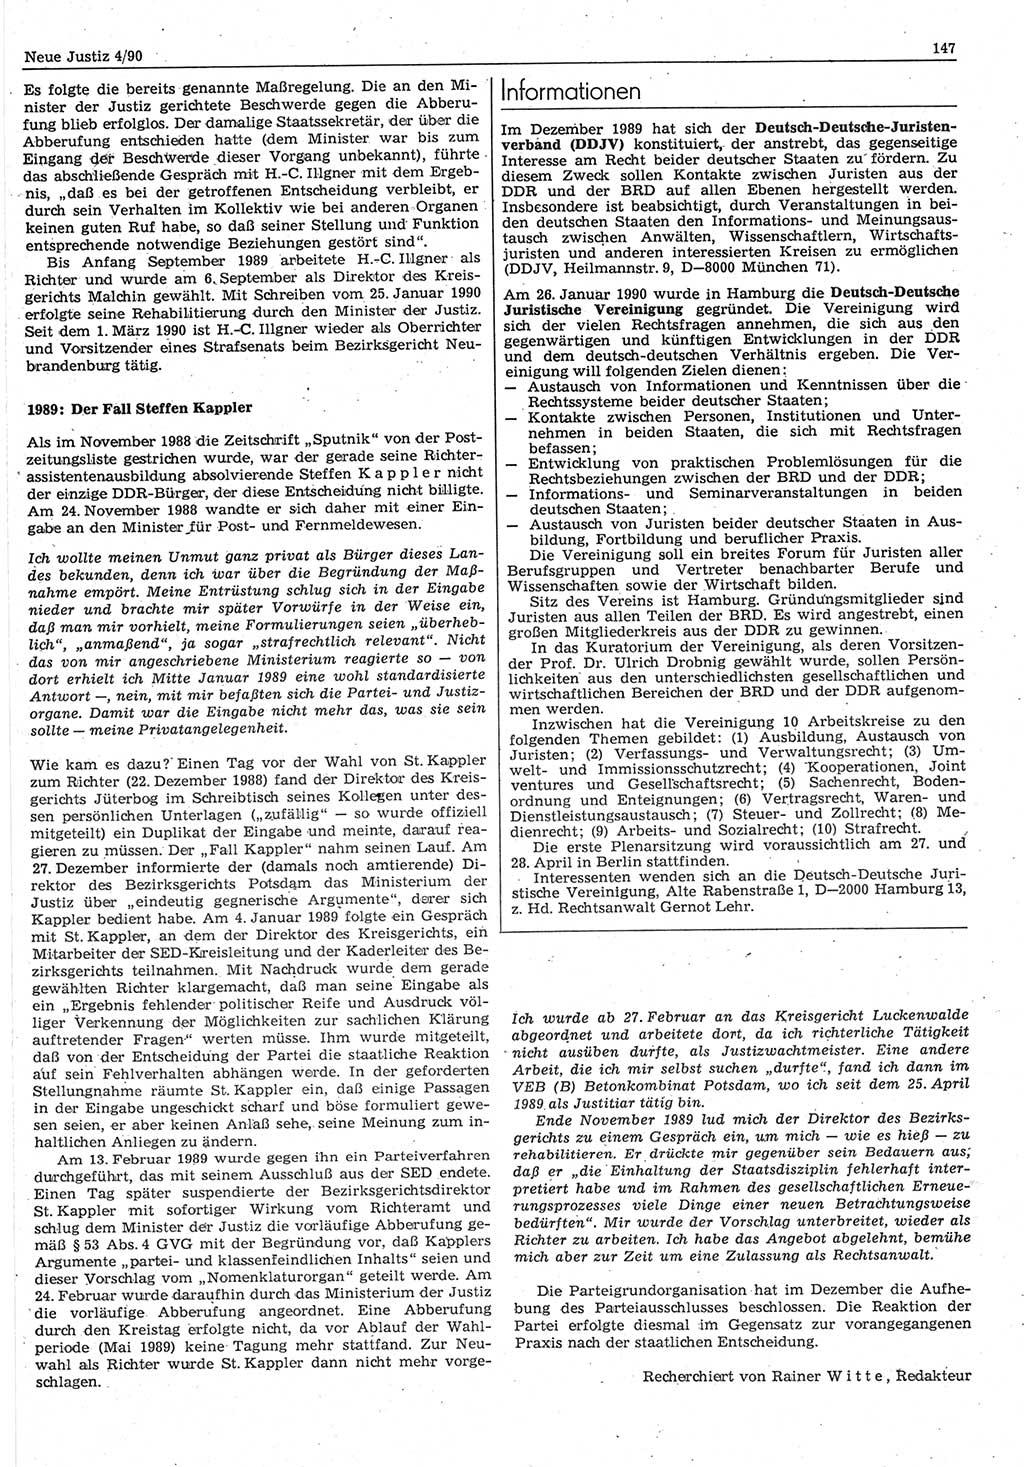 Neue Justiz (NJ), Zeitschrift für Rechtsetzung und Rechtsanwendung [Deutsche Demokratische Republik (DDR)], 44. Jahrgang 1990, Seite 147 (NJ DDR 1990, S. 147)